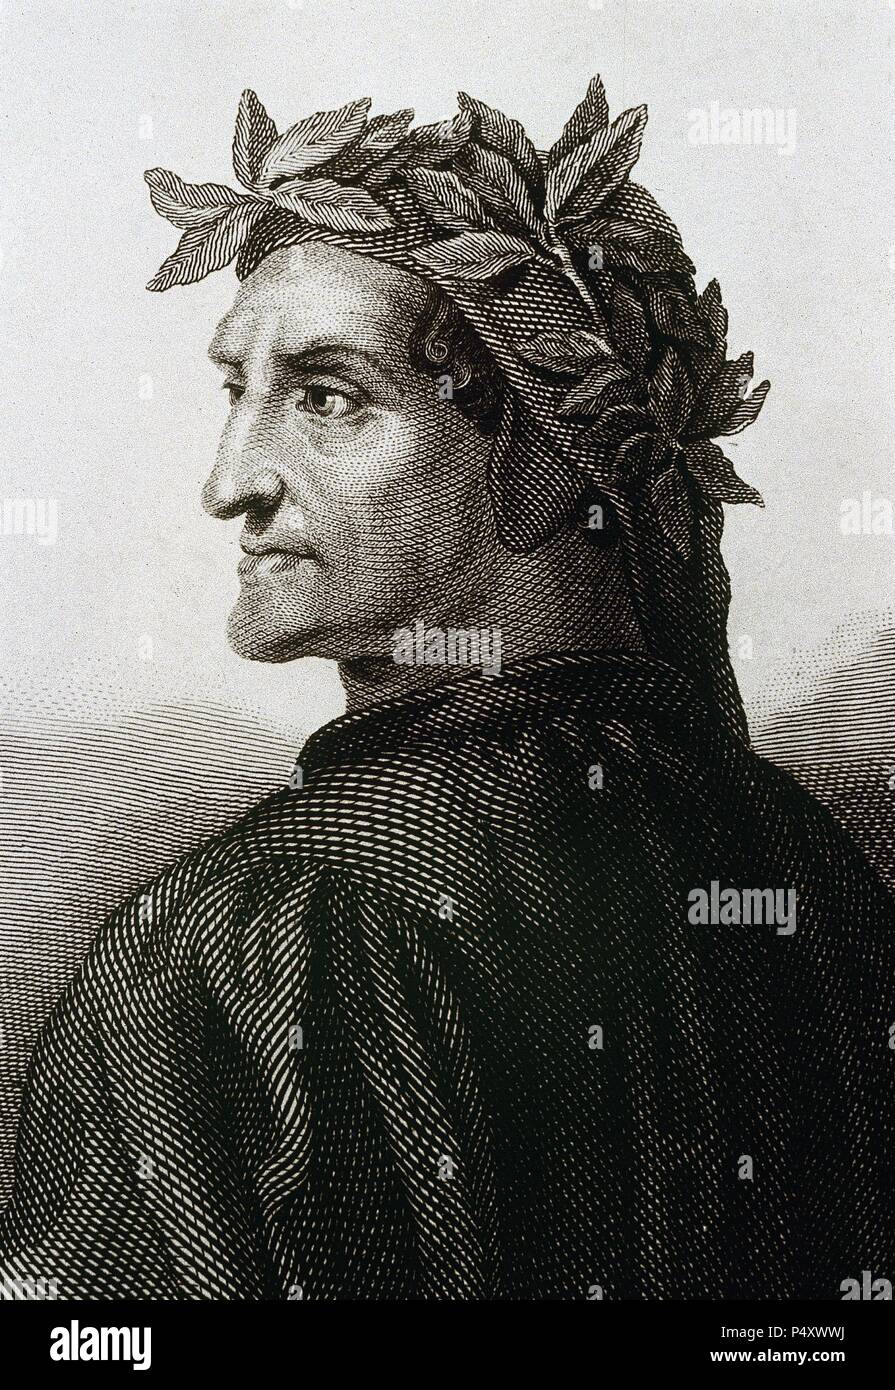 DANTE ALIGHIERI (Florencia,1265-Rávena,1321). Poeta italiano creador de 'La divina Comedia' entre 1307 y 1321, poema escrito en toscano. Grabado. Stock Photo